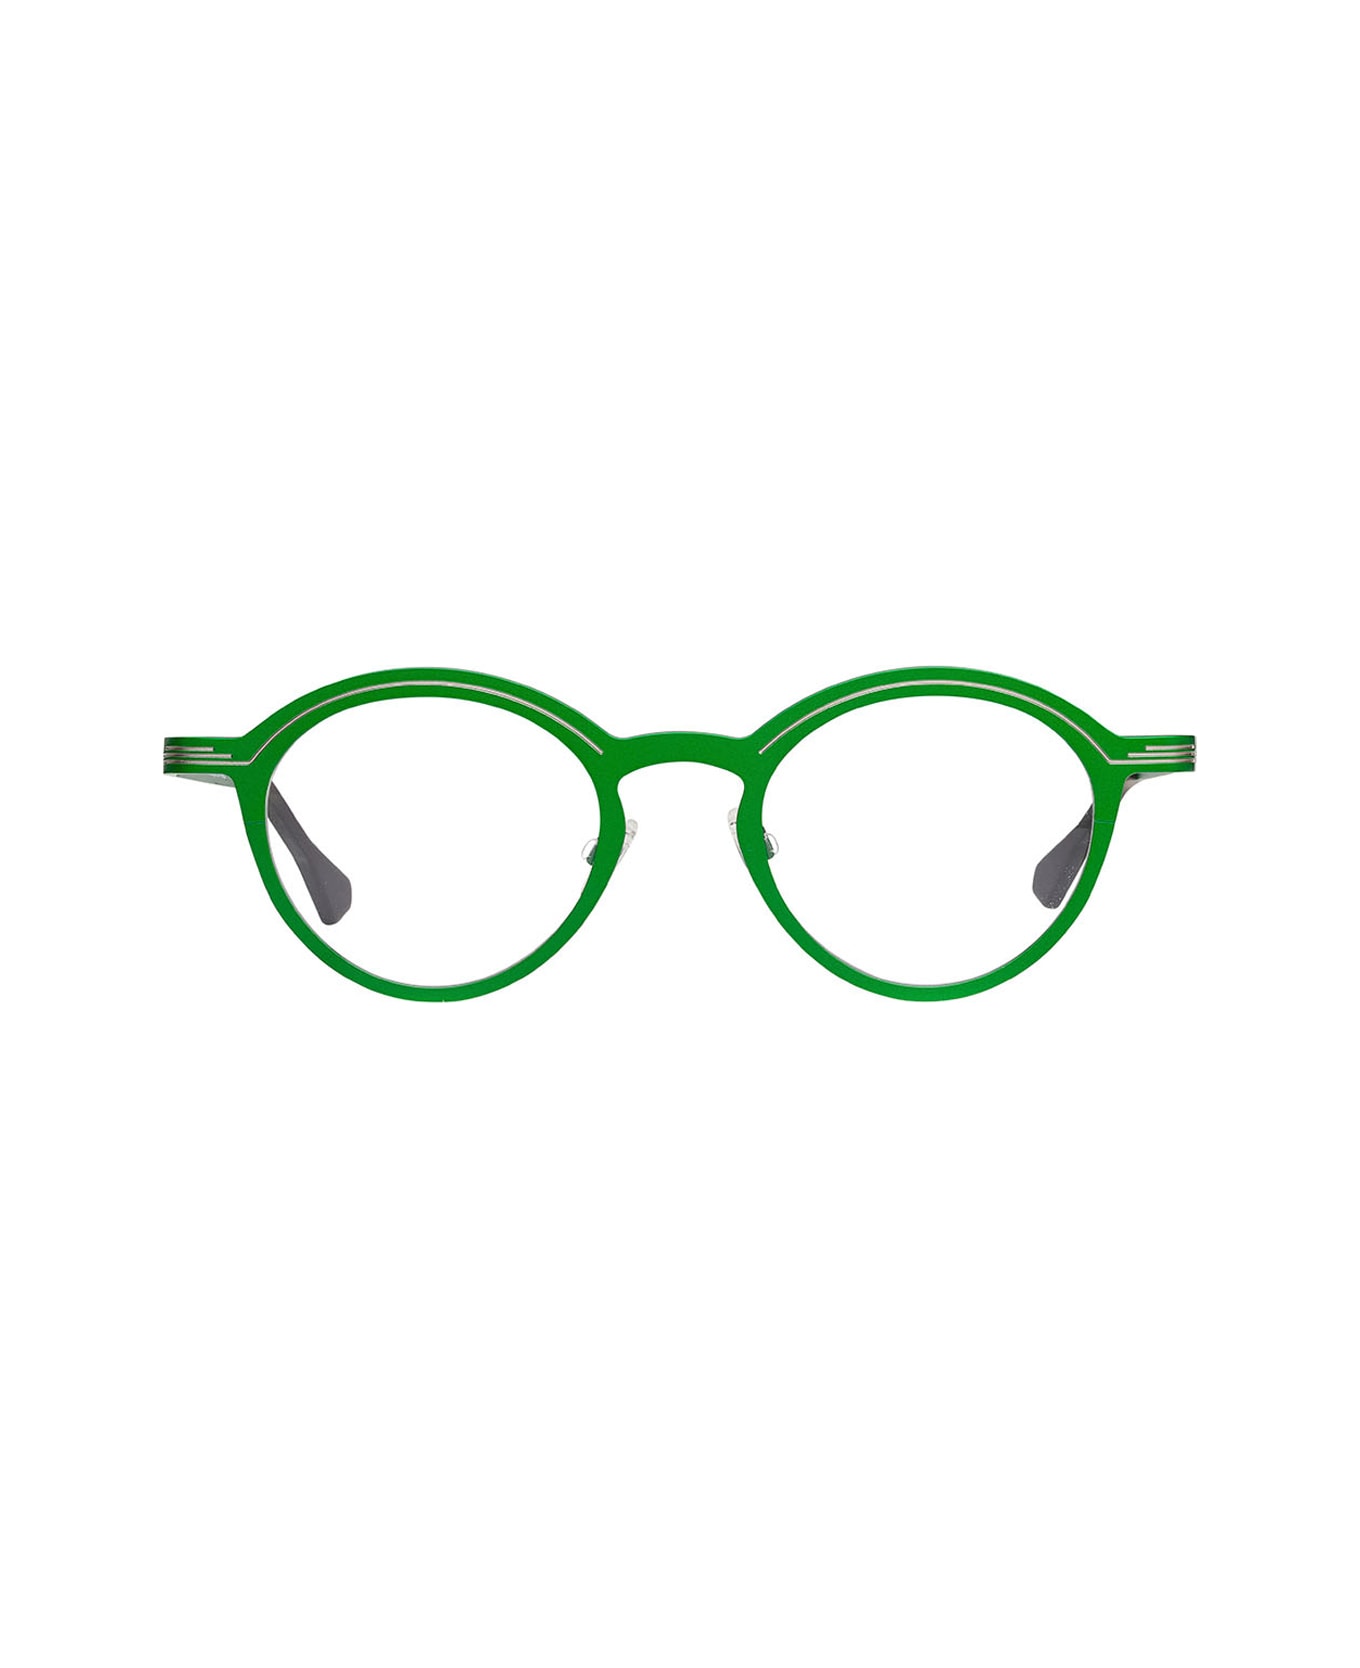 Matttew Tetra 1393 Glasses - Verde アイウェア